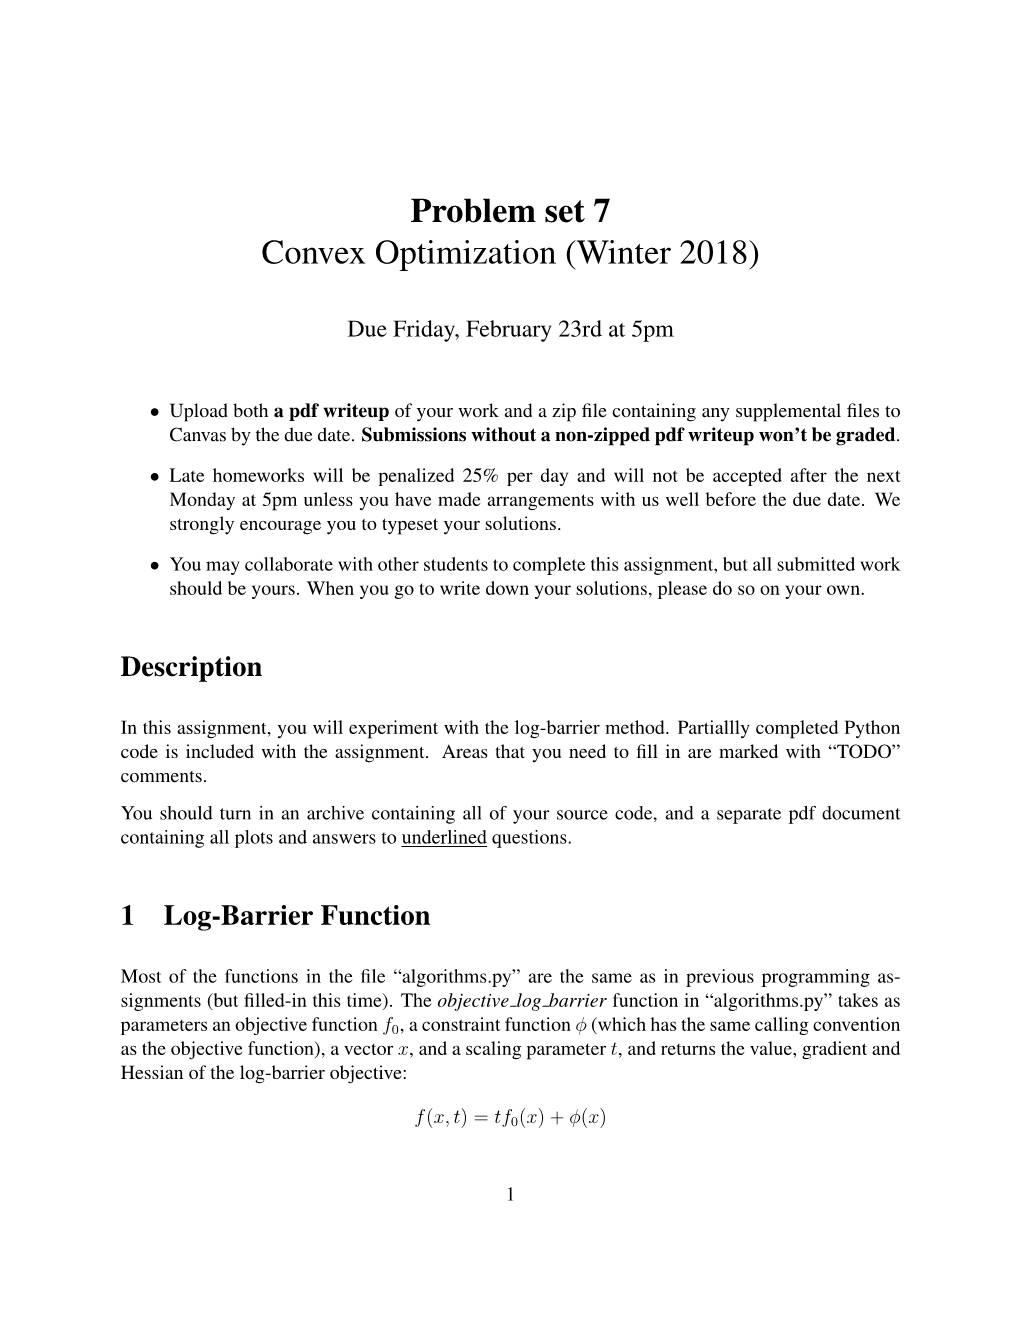 Problem Set 7 Convex Optimization (Winter 2018)